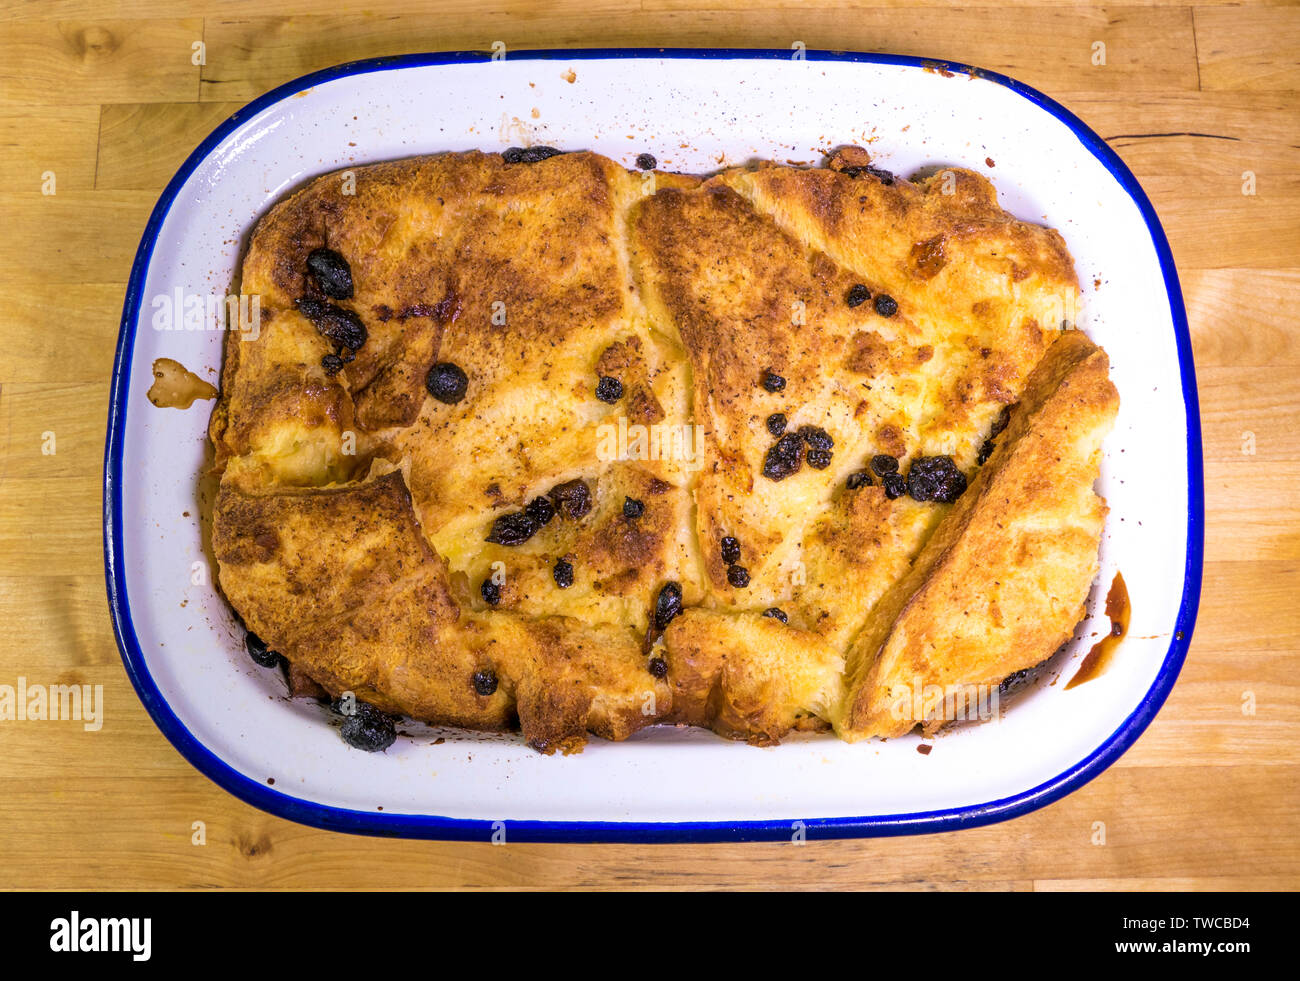 Nahaufnahme von oben auf ein ganzes Brot und Butter Pudding Dessert in einem emamel Auflaufform, heiß aus dem Ofen. Stockfoto